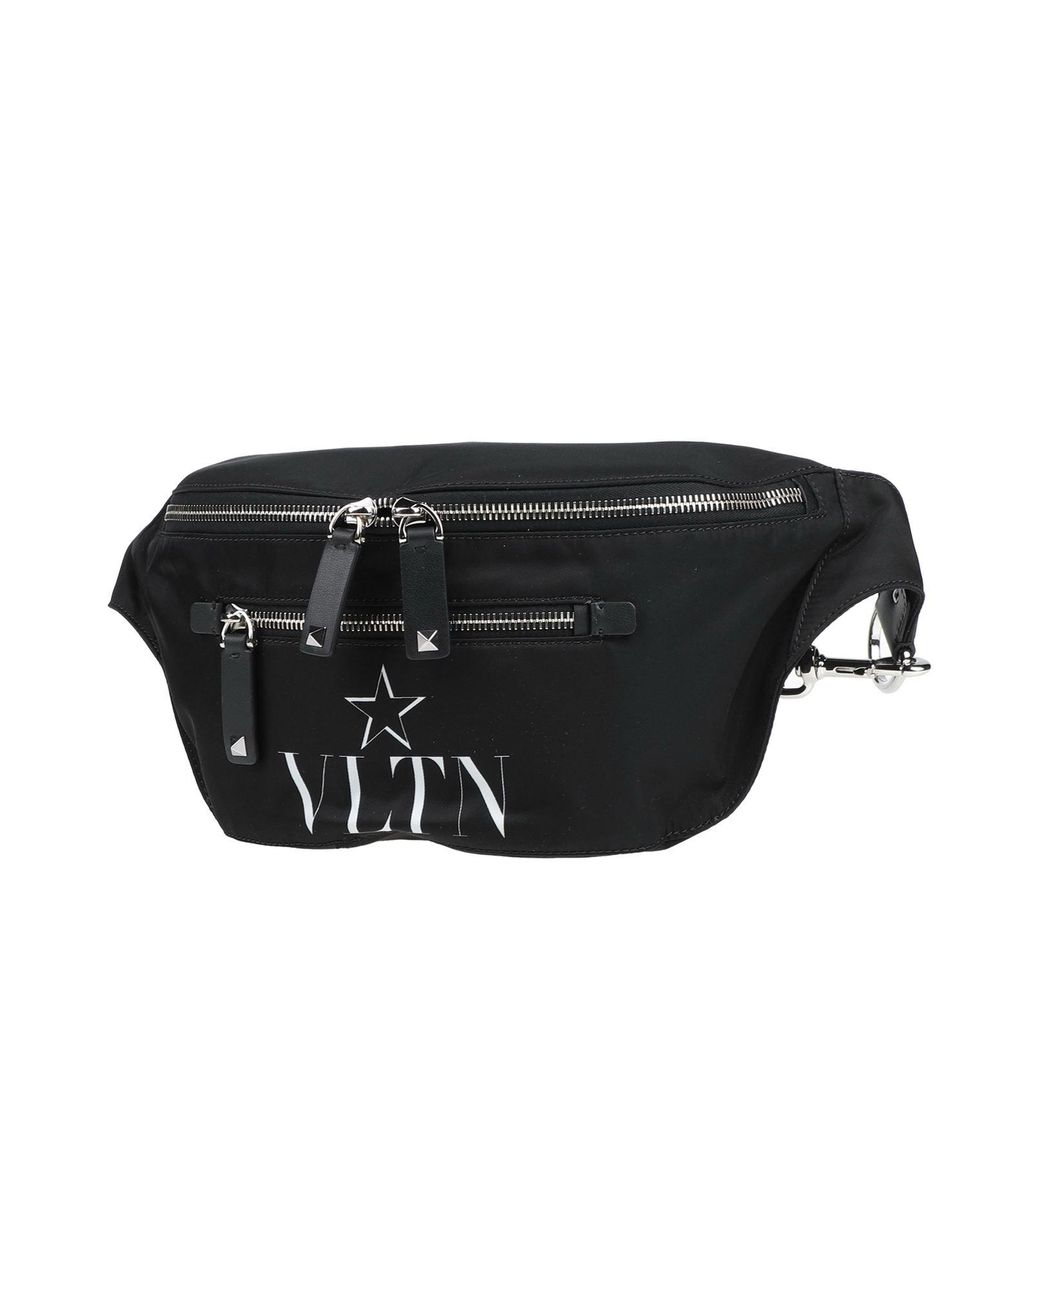 Valentino Garavani Leather Backpacks & Fanny Packs in Black for Men - Lyst